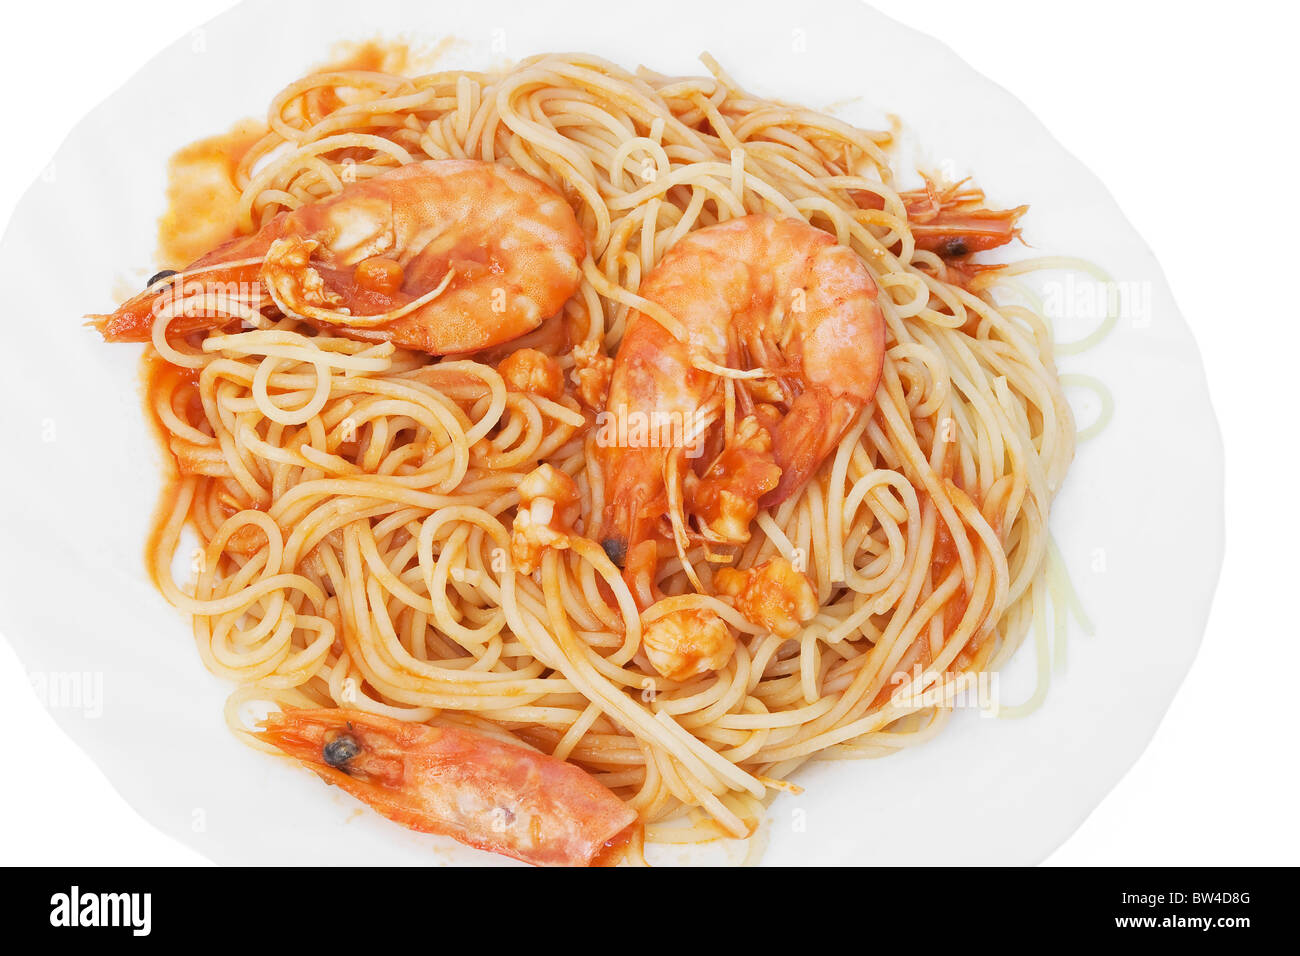 Assiette de spaghetti aux crevettes et sauce tomate isolé sur fond blanc Banque D'Images